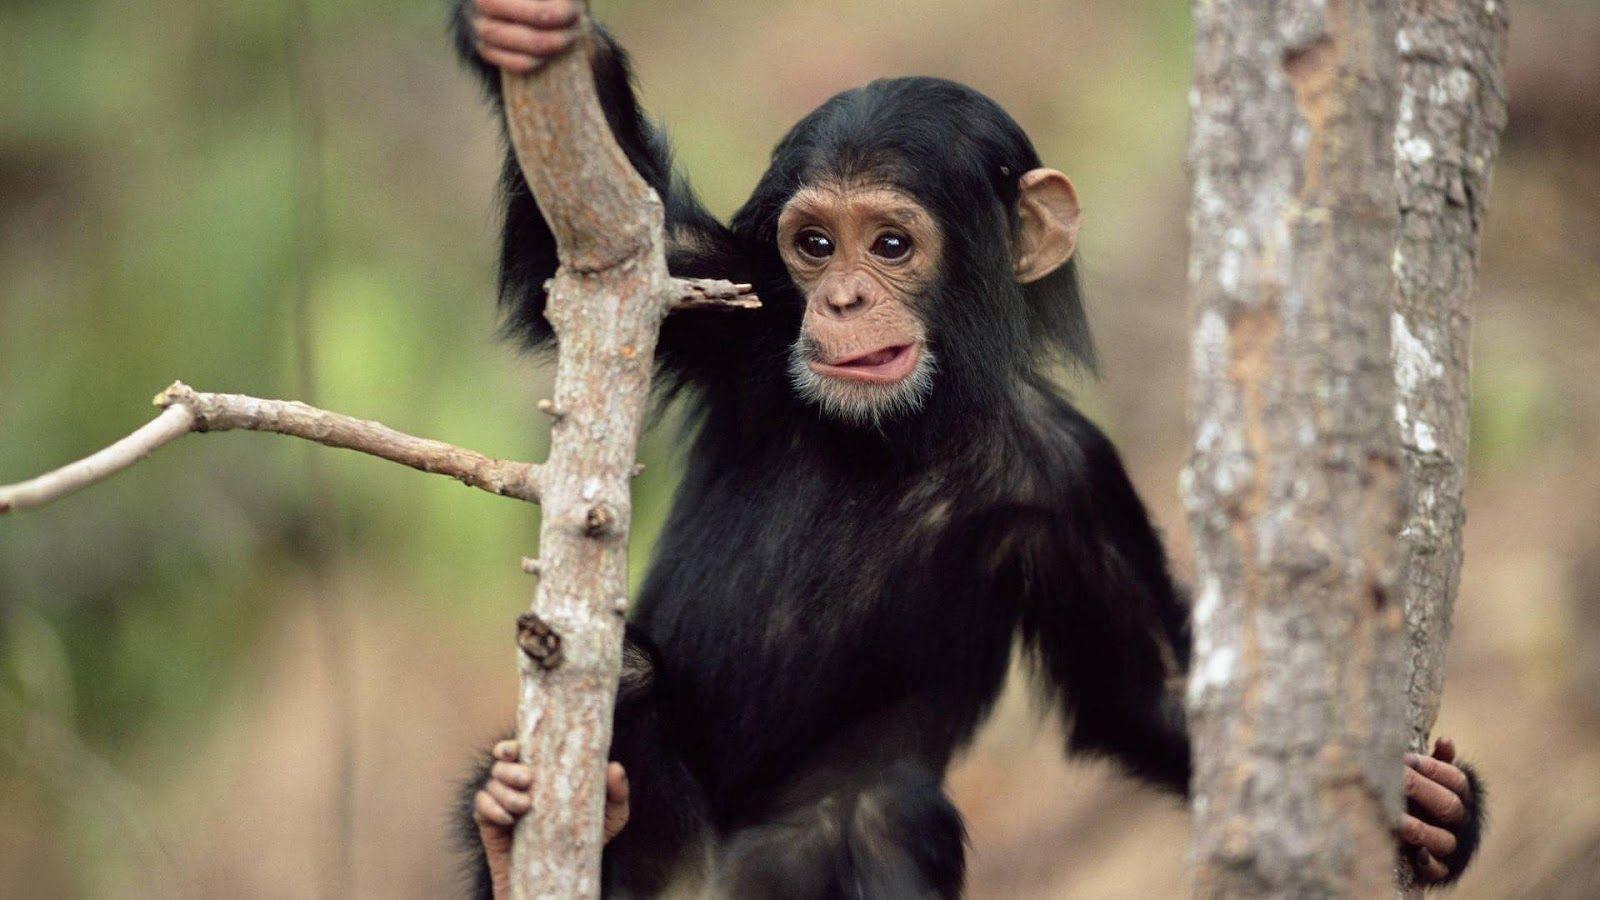 Monkey HD wallpaper on tree monkey picture